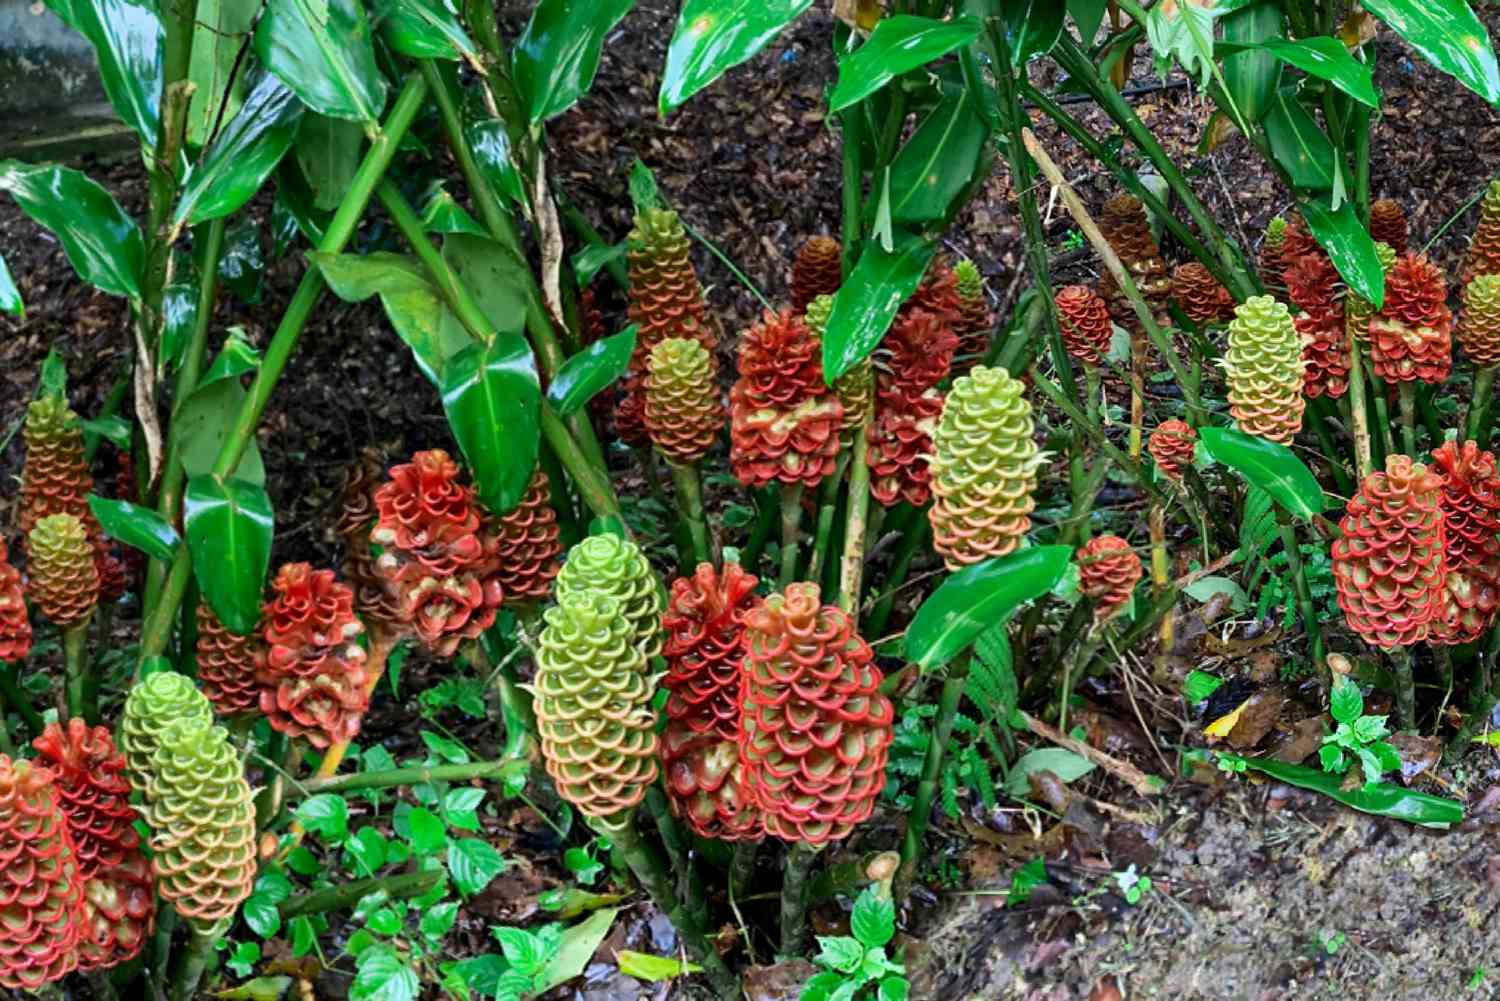 Bienenstock-Ingwerpflanze mit roten und grünen zapfenförmigen Hüllblättern im Boden mit hohen Stämmen und Blättern